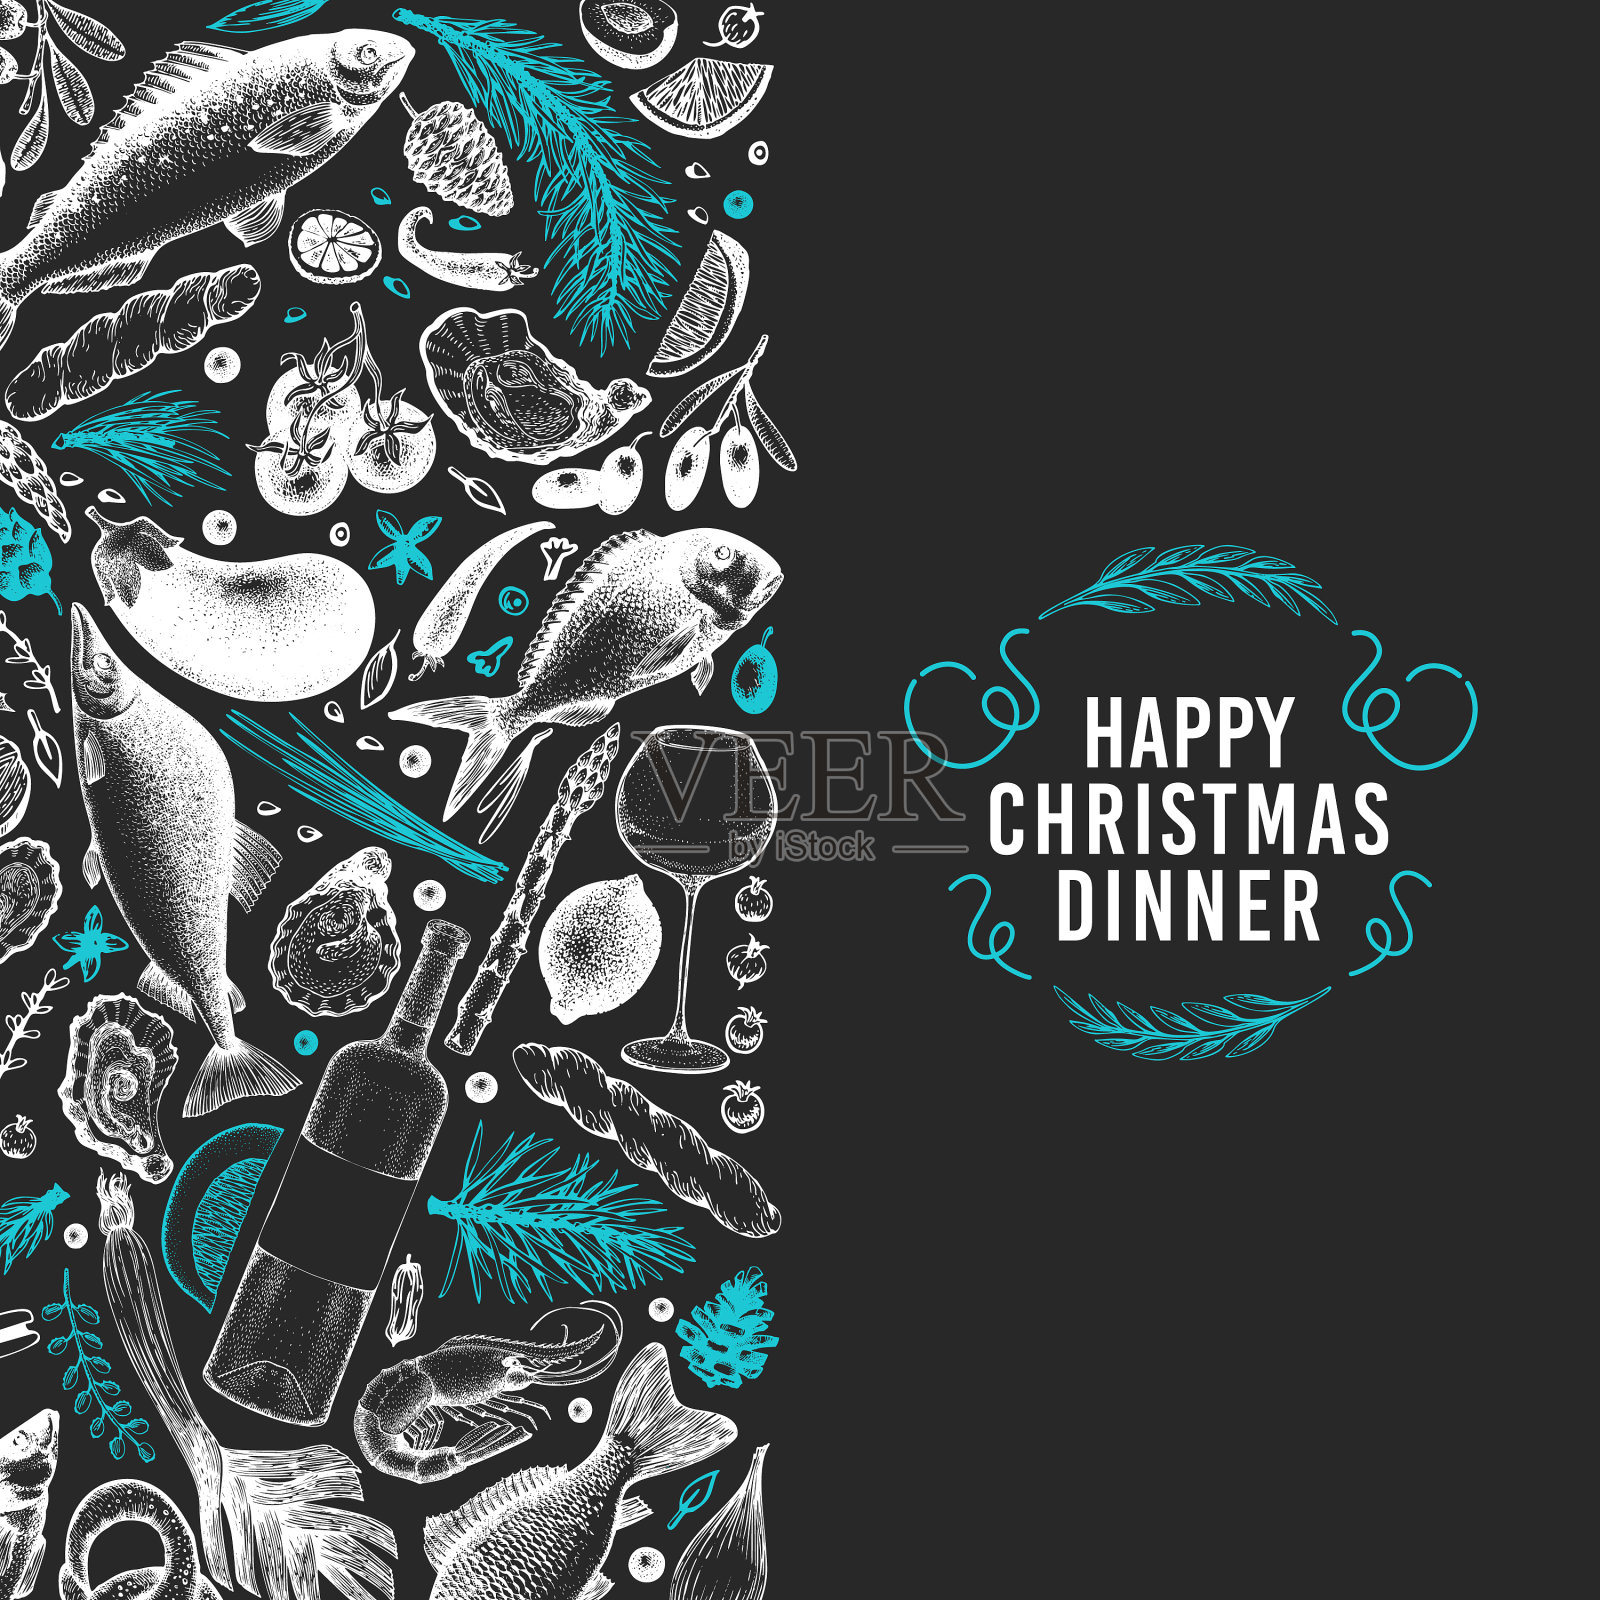 快乐圣诞晚餐设计模板插画图片素材